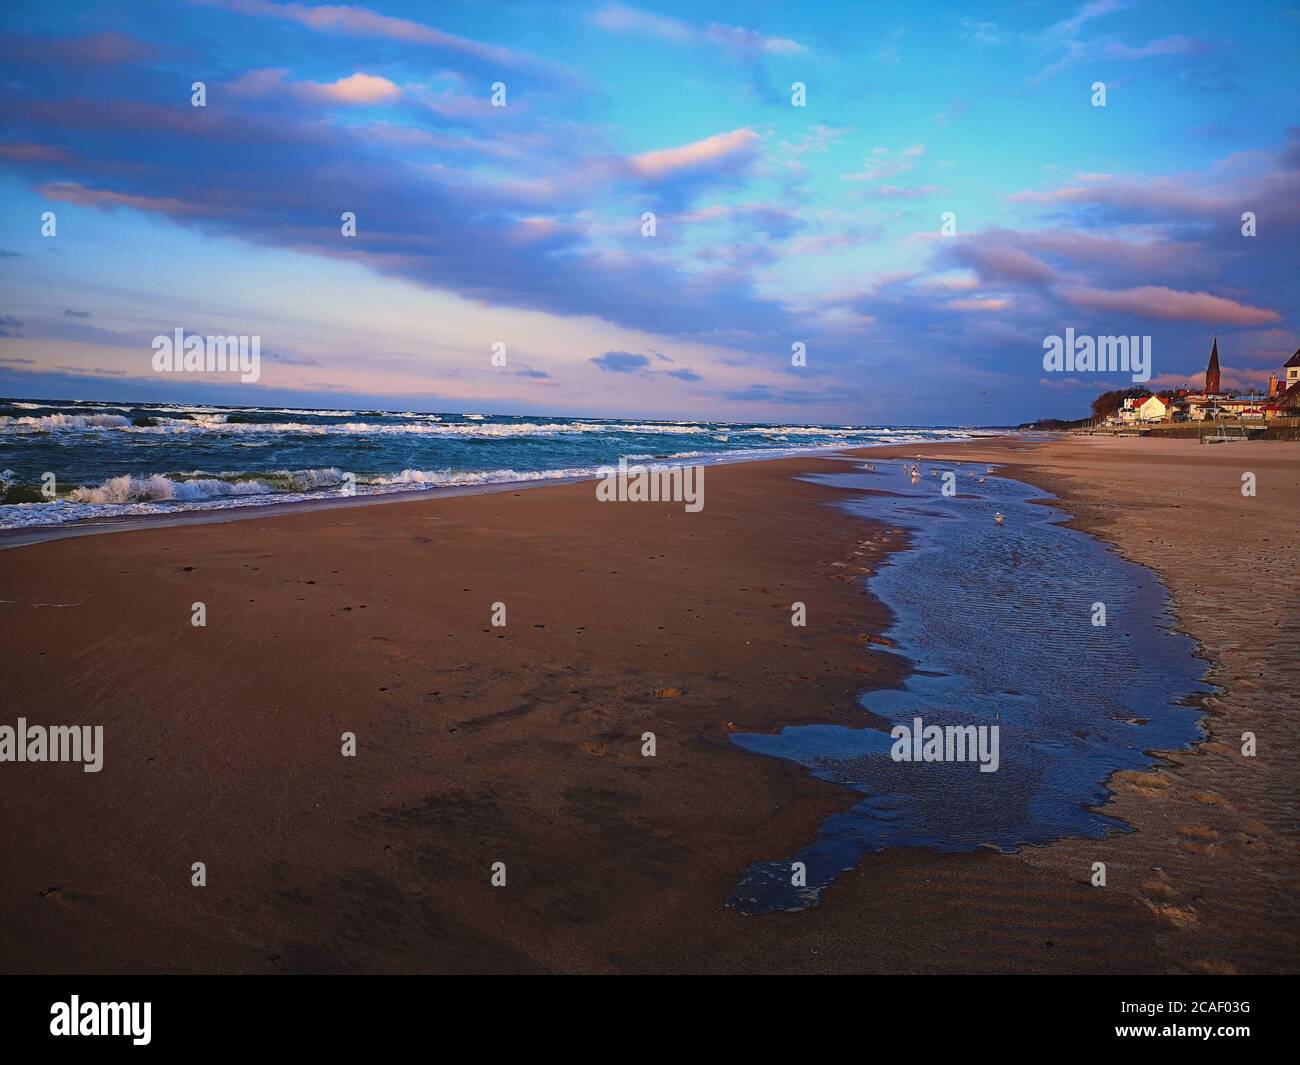 Una vista mozzafiato che si affaccia su una delle spiagge sabbiose della Polonia, con un laghetto temporaneo sparso sulla sabbia del Baltico. Foto Stock